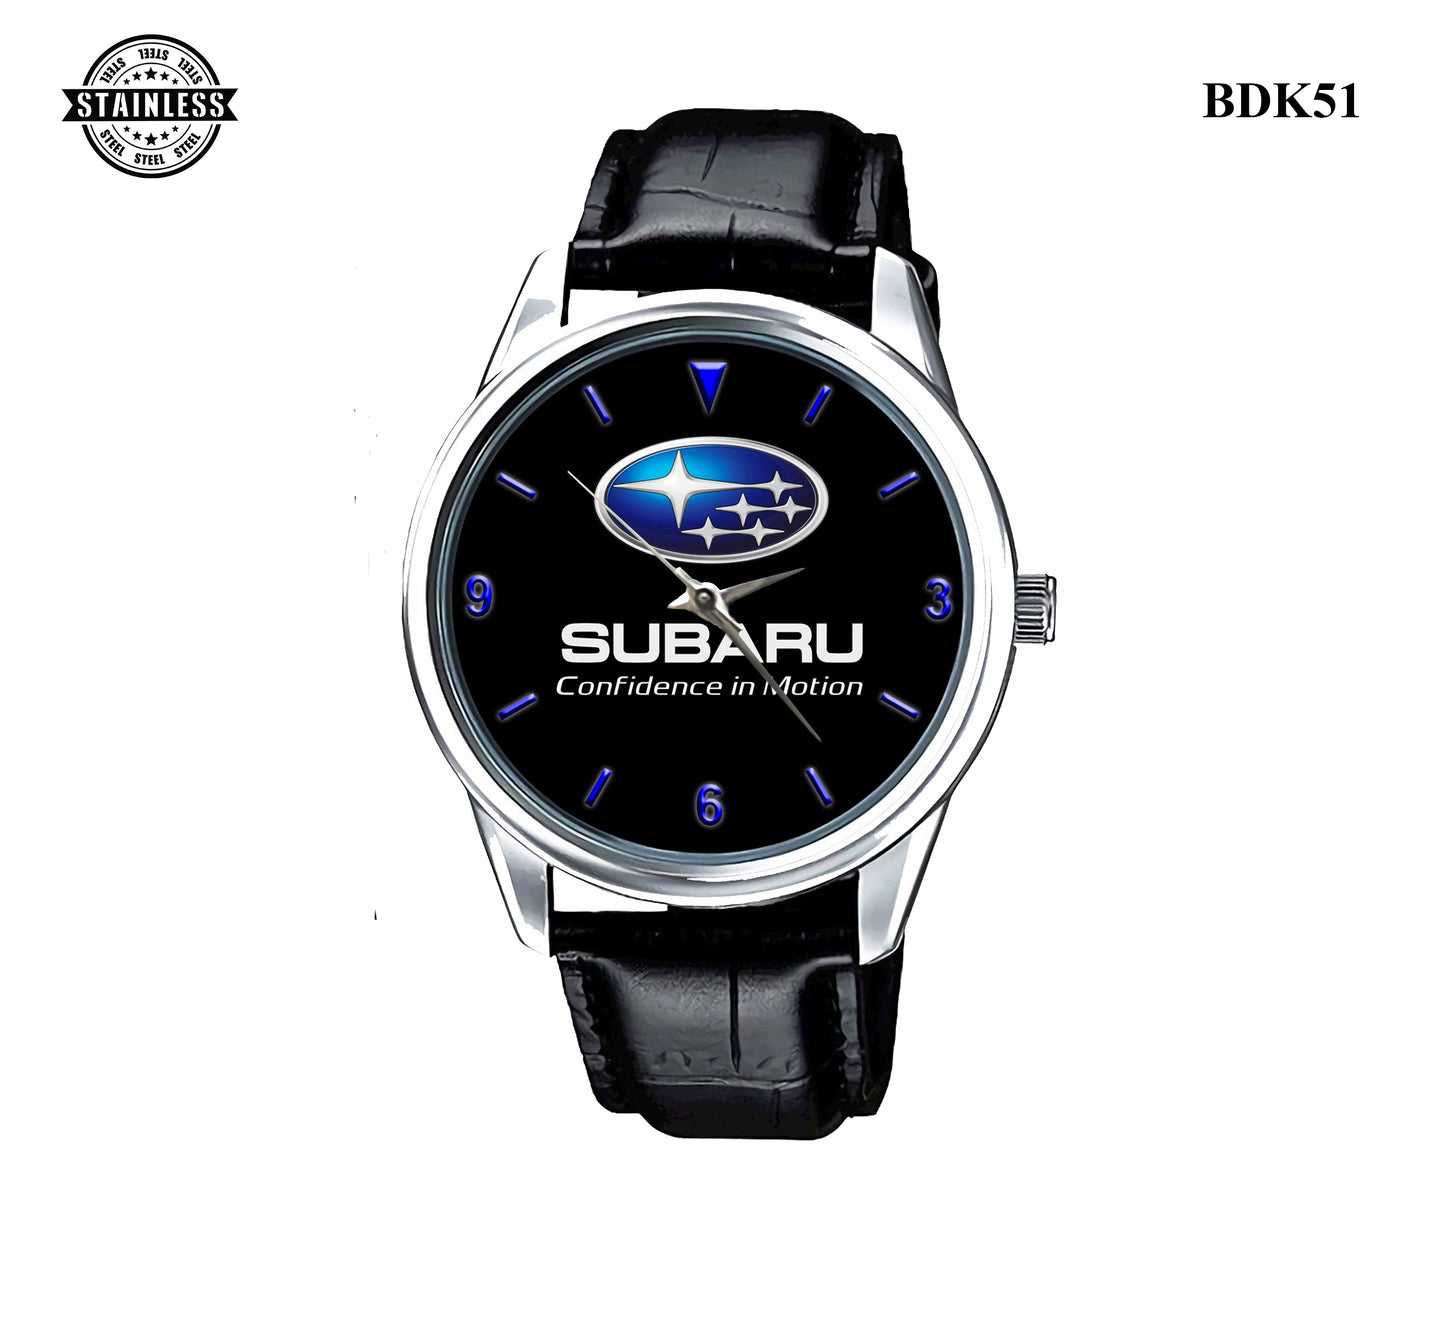 Subaru covidence in motion Sport Metal Watch Bdk55